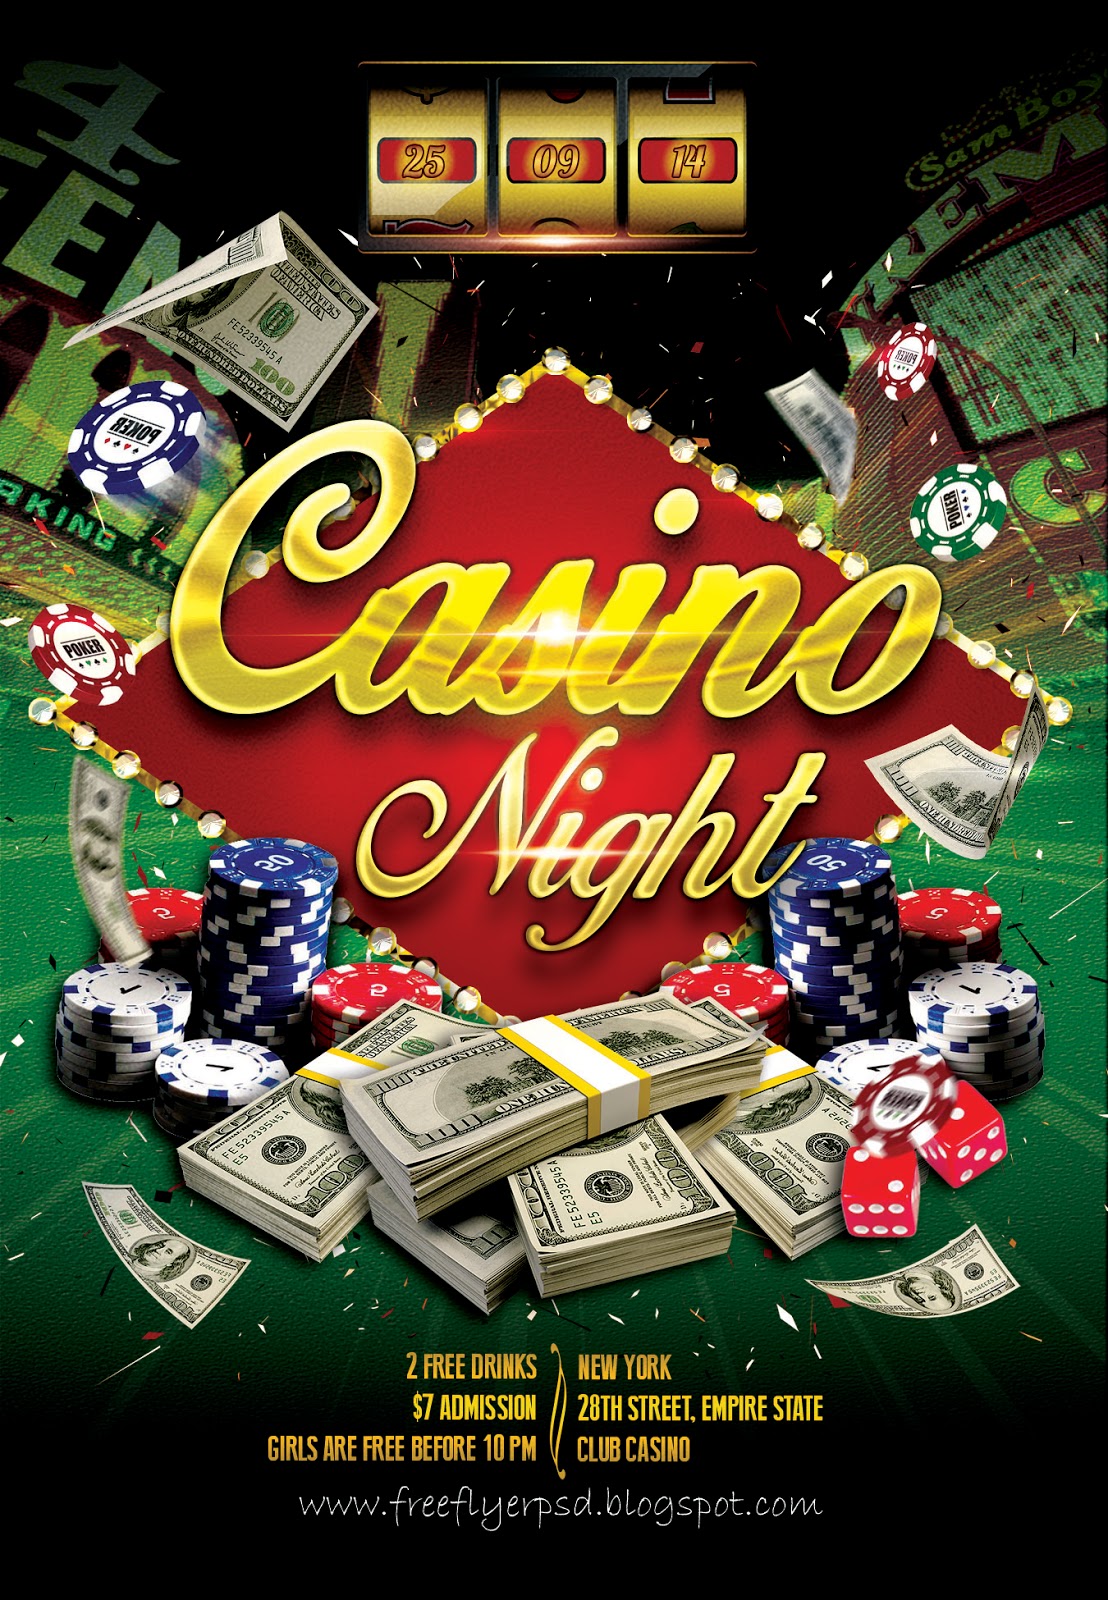 7 games casino